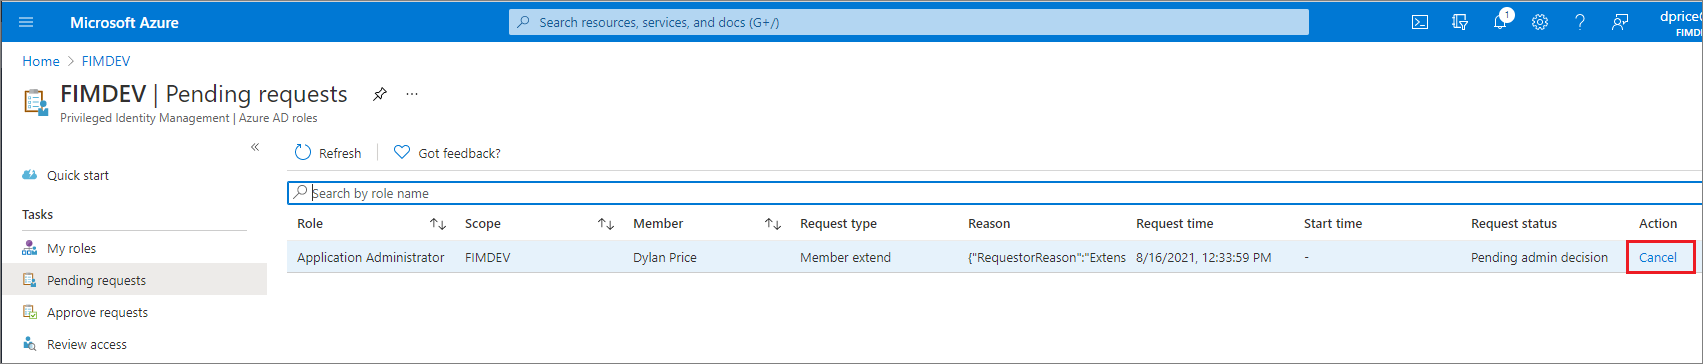 Képernyőkép a Microsoft Entra szerepköreiről – Függőben lévő kérelmek lap, amelyen a függőben lévő kérések listája látható, valamint a Mégse hivatkozás.